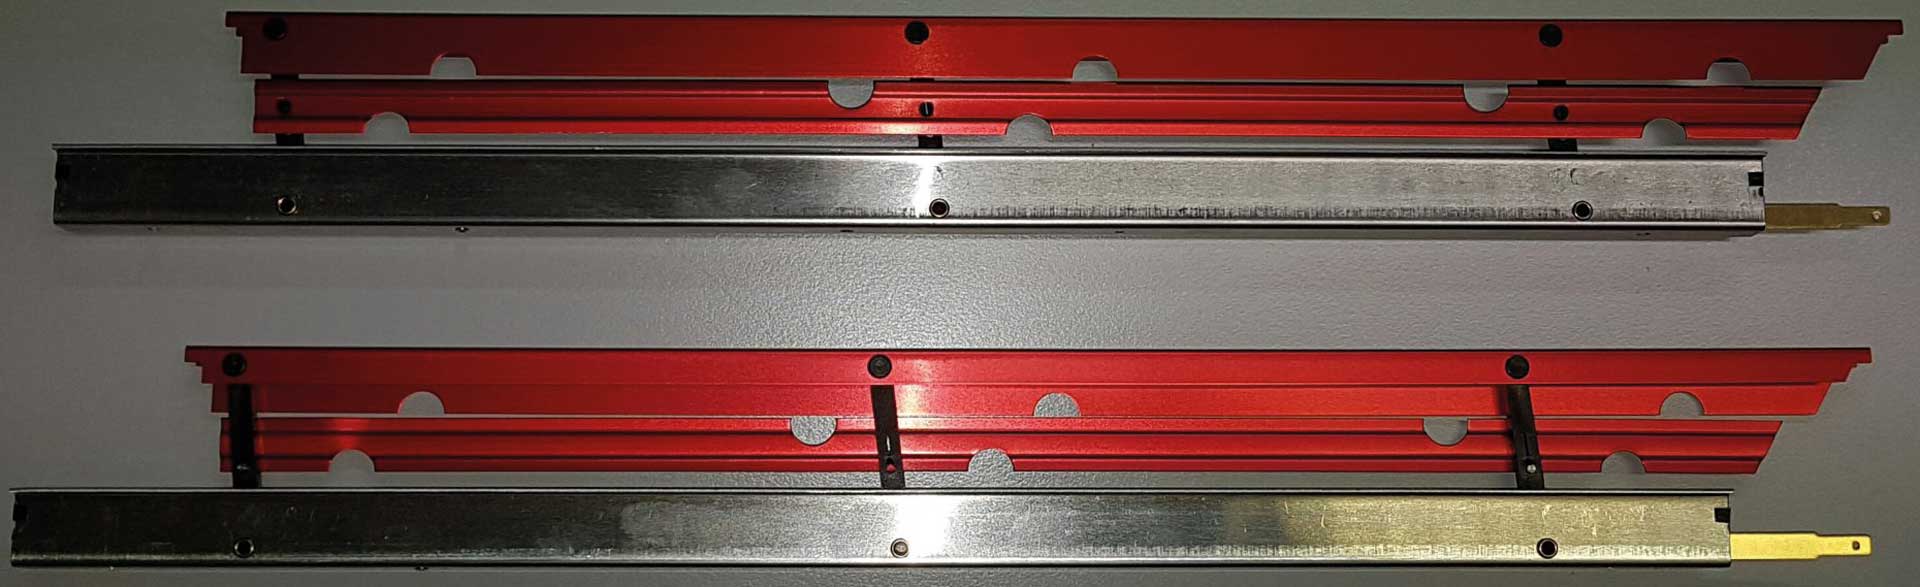 MODELLBAU LINDINGER Flaps 37cm/16mm aluminum red anodized Double locking